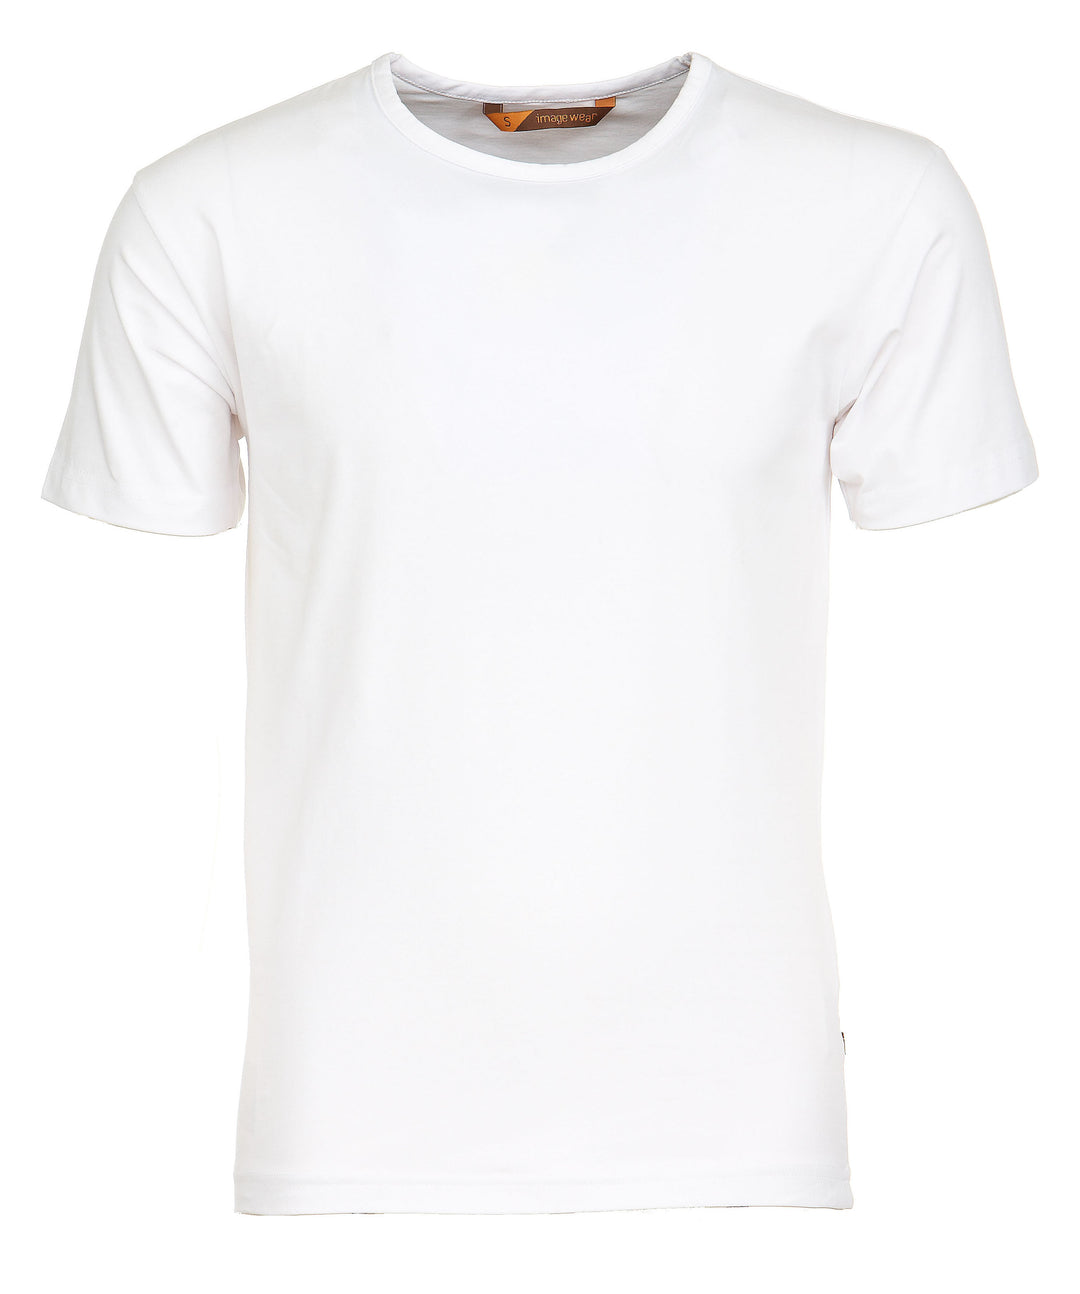 Valkoinen lyhythihainen tyköistuva miesten T-paita. Joustava ja laadukas materiaali. Kestää hyvin toistuvia pesuja. Paita pitää muotonsa eikä nukkaannu herkästi. Laadukas paita työkäyttöön ja vapaa-aikaan.